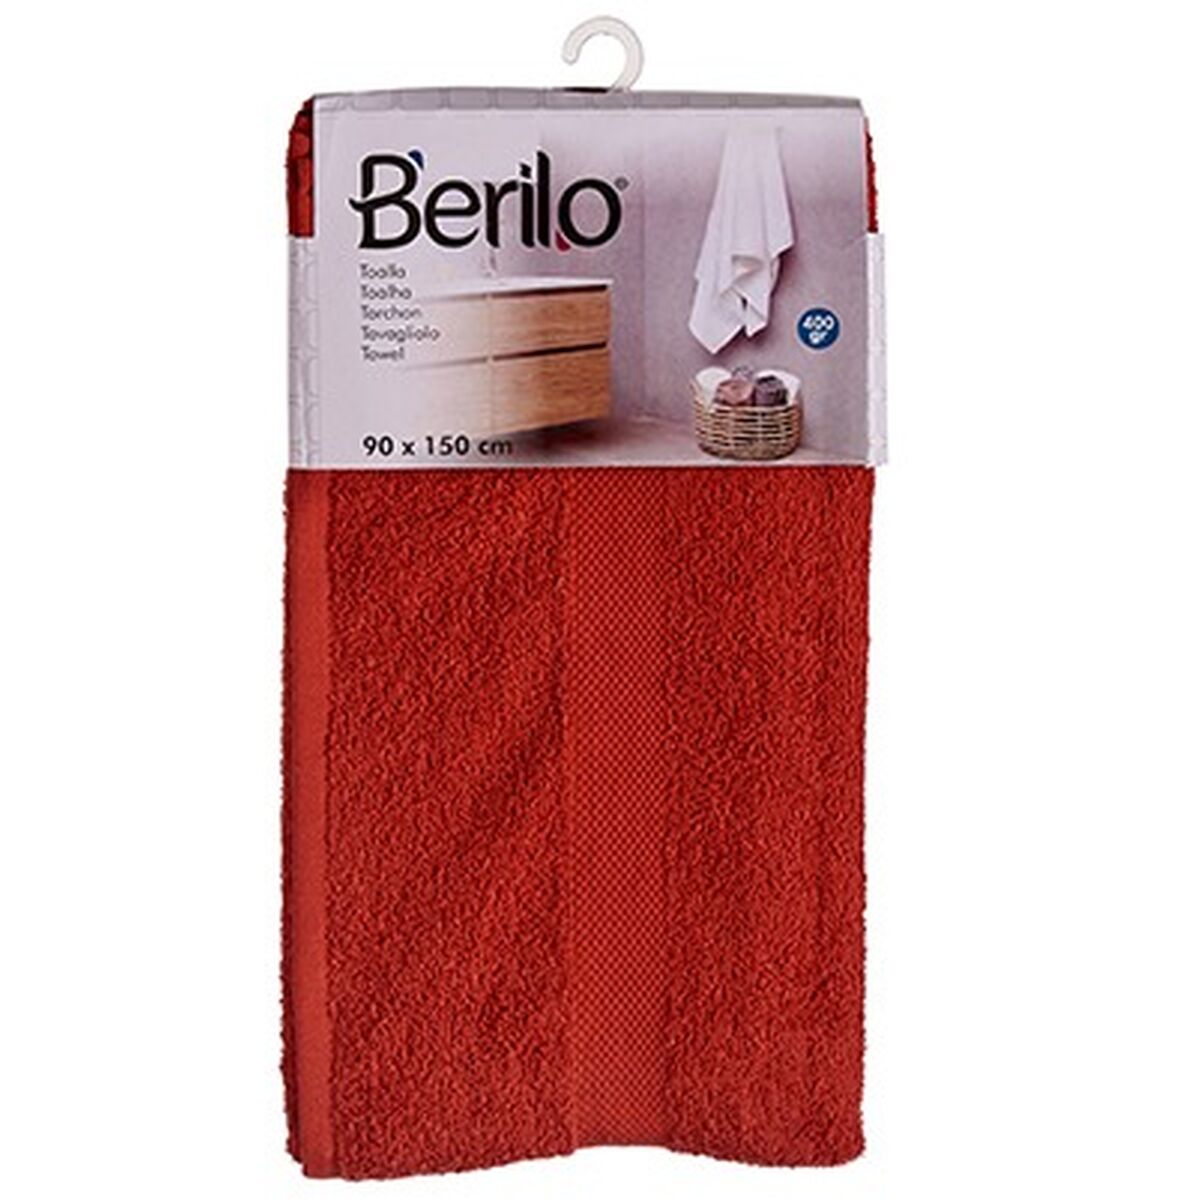 Bath towel 90 x 150 cm Terracotta colour (3 Units)